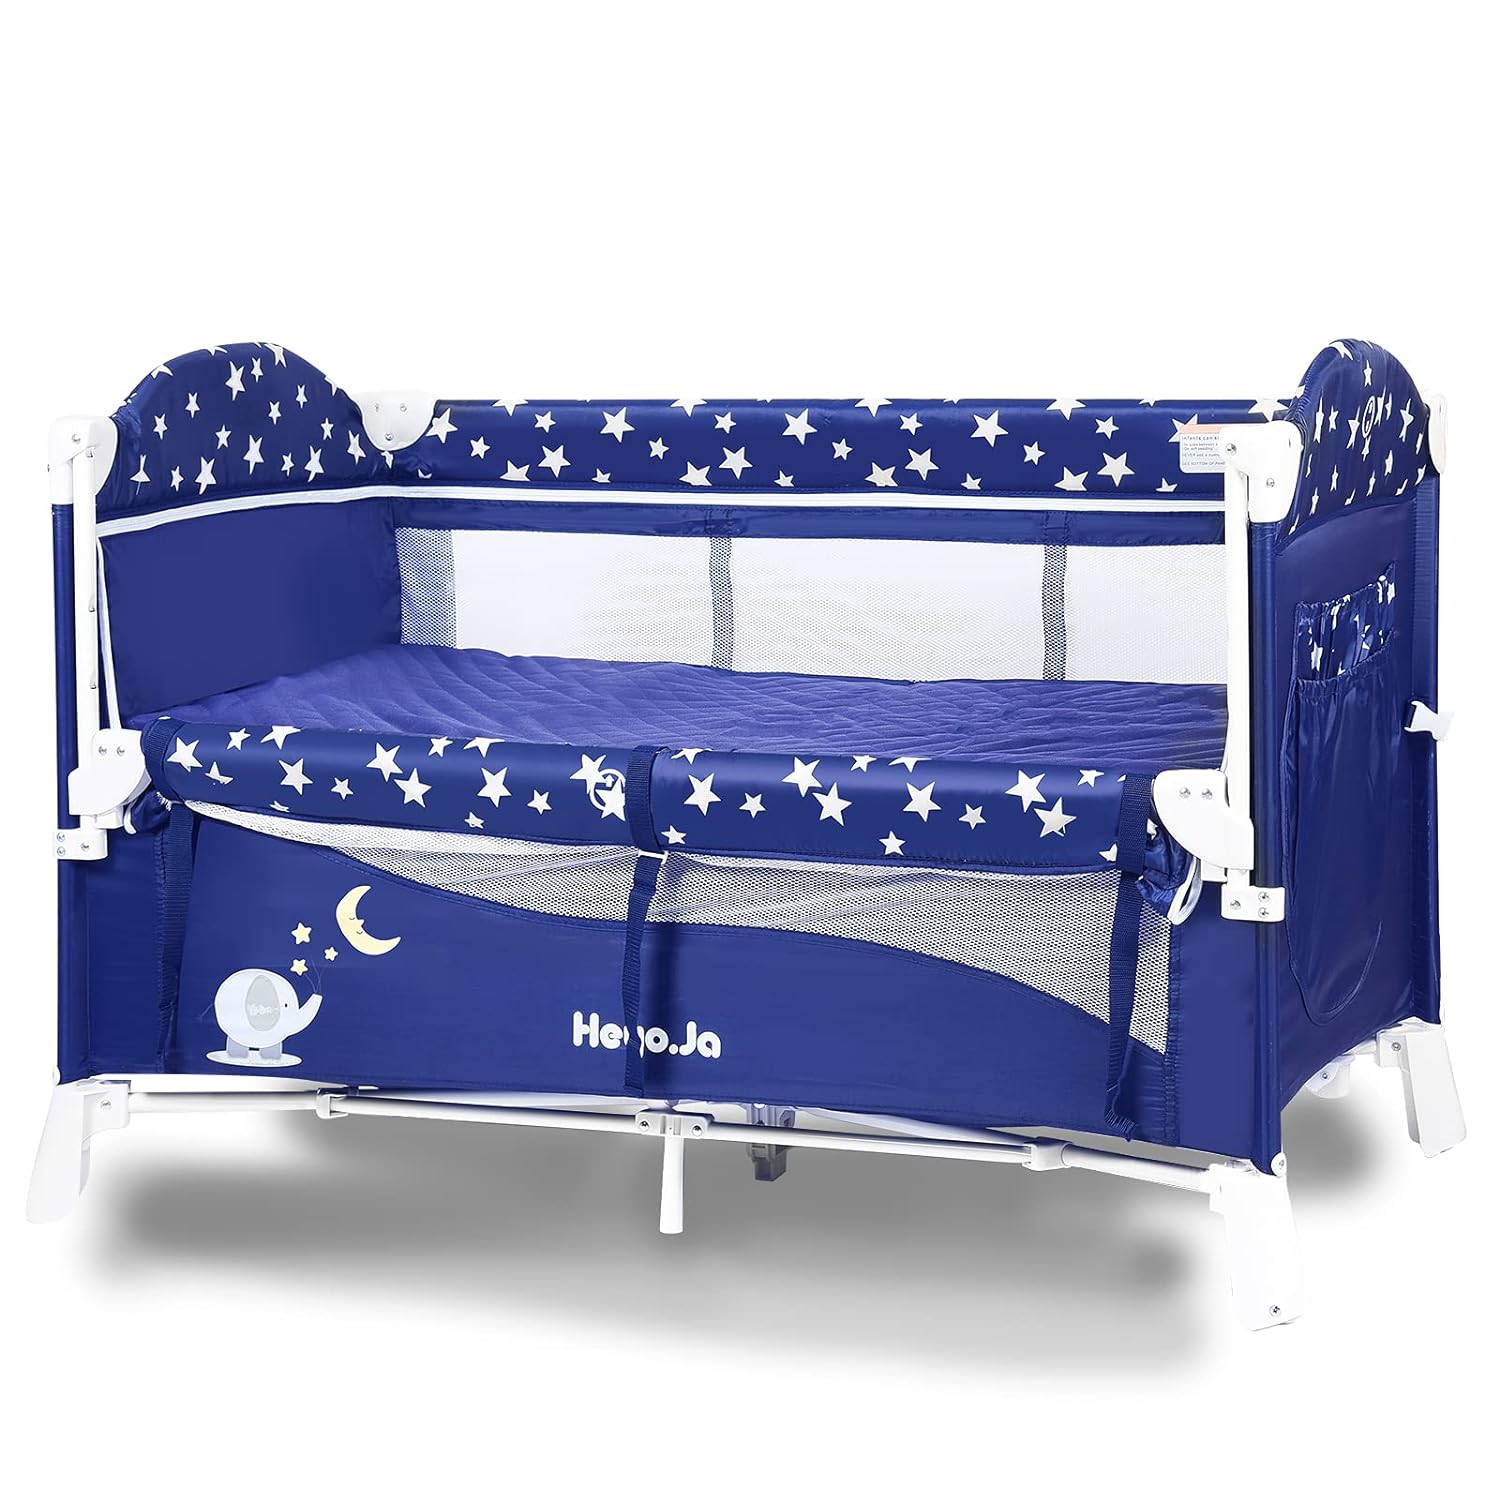 Pamo Babe Cuna de viaje portátil para niños pequeños cama de bebé con  moisés y cambiador azul azul